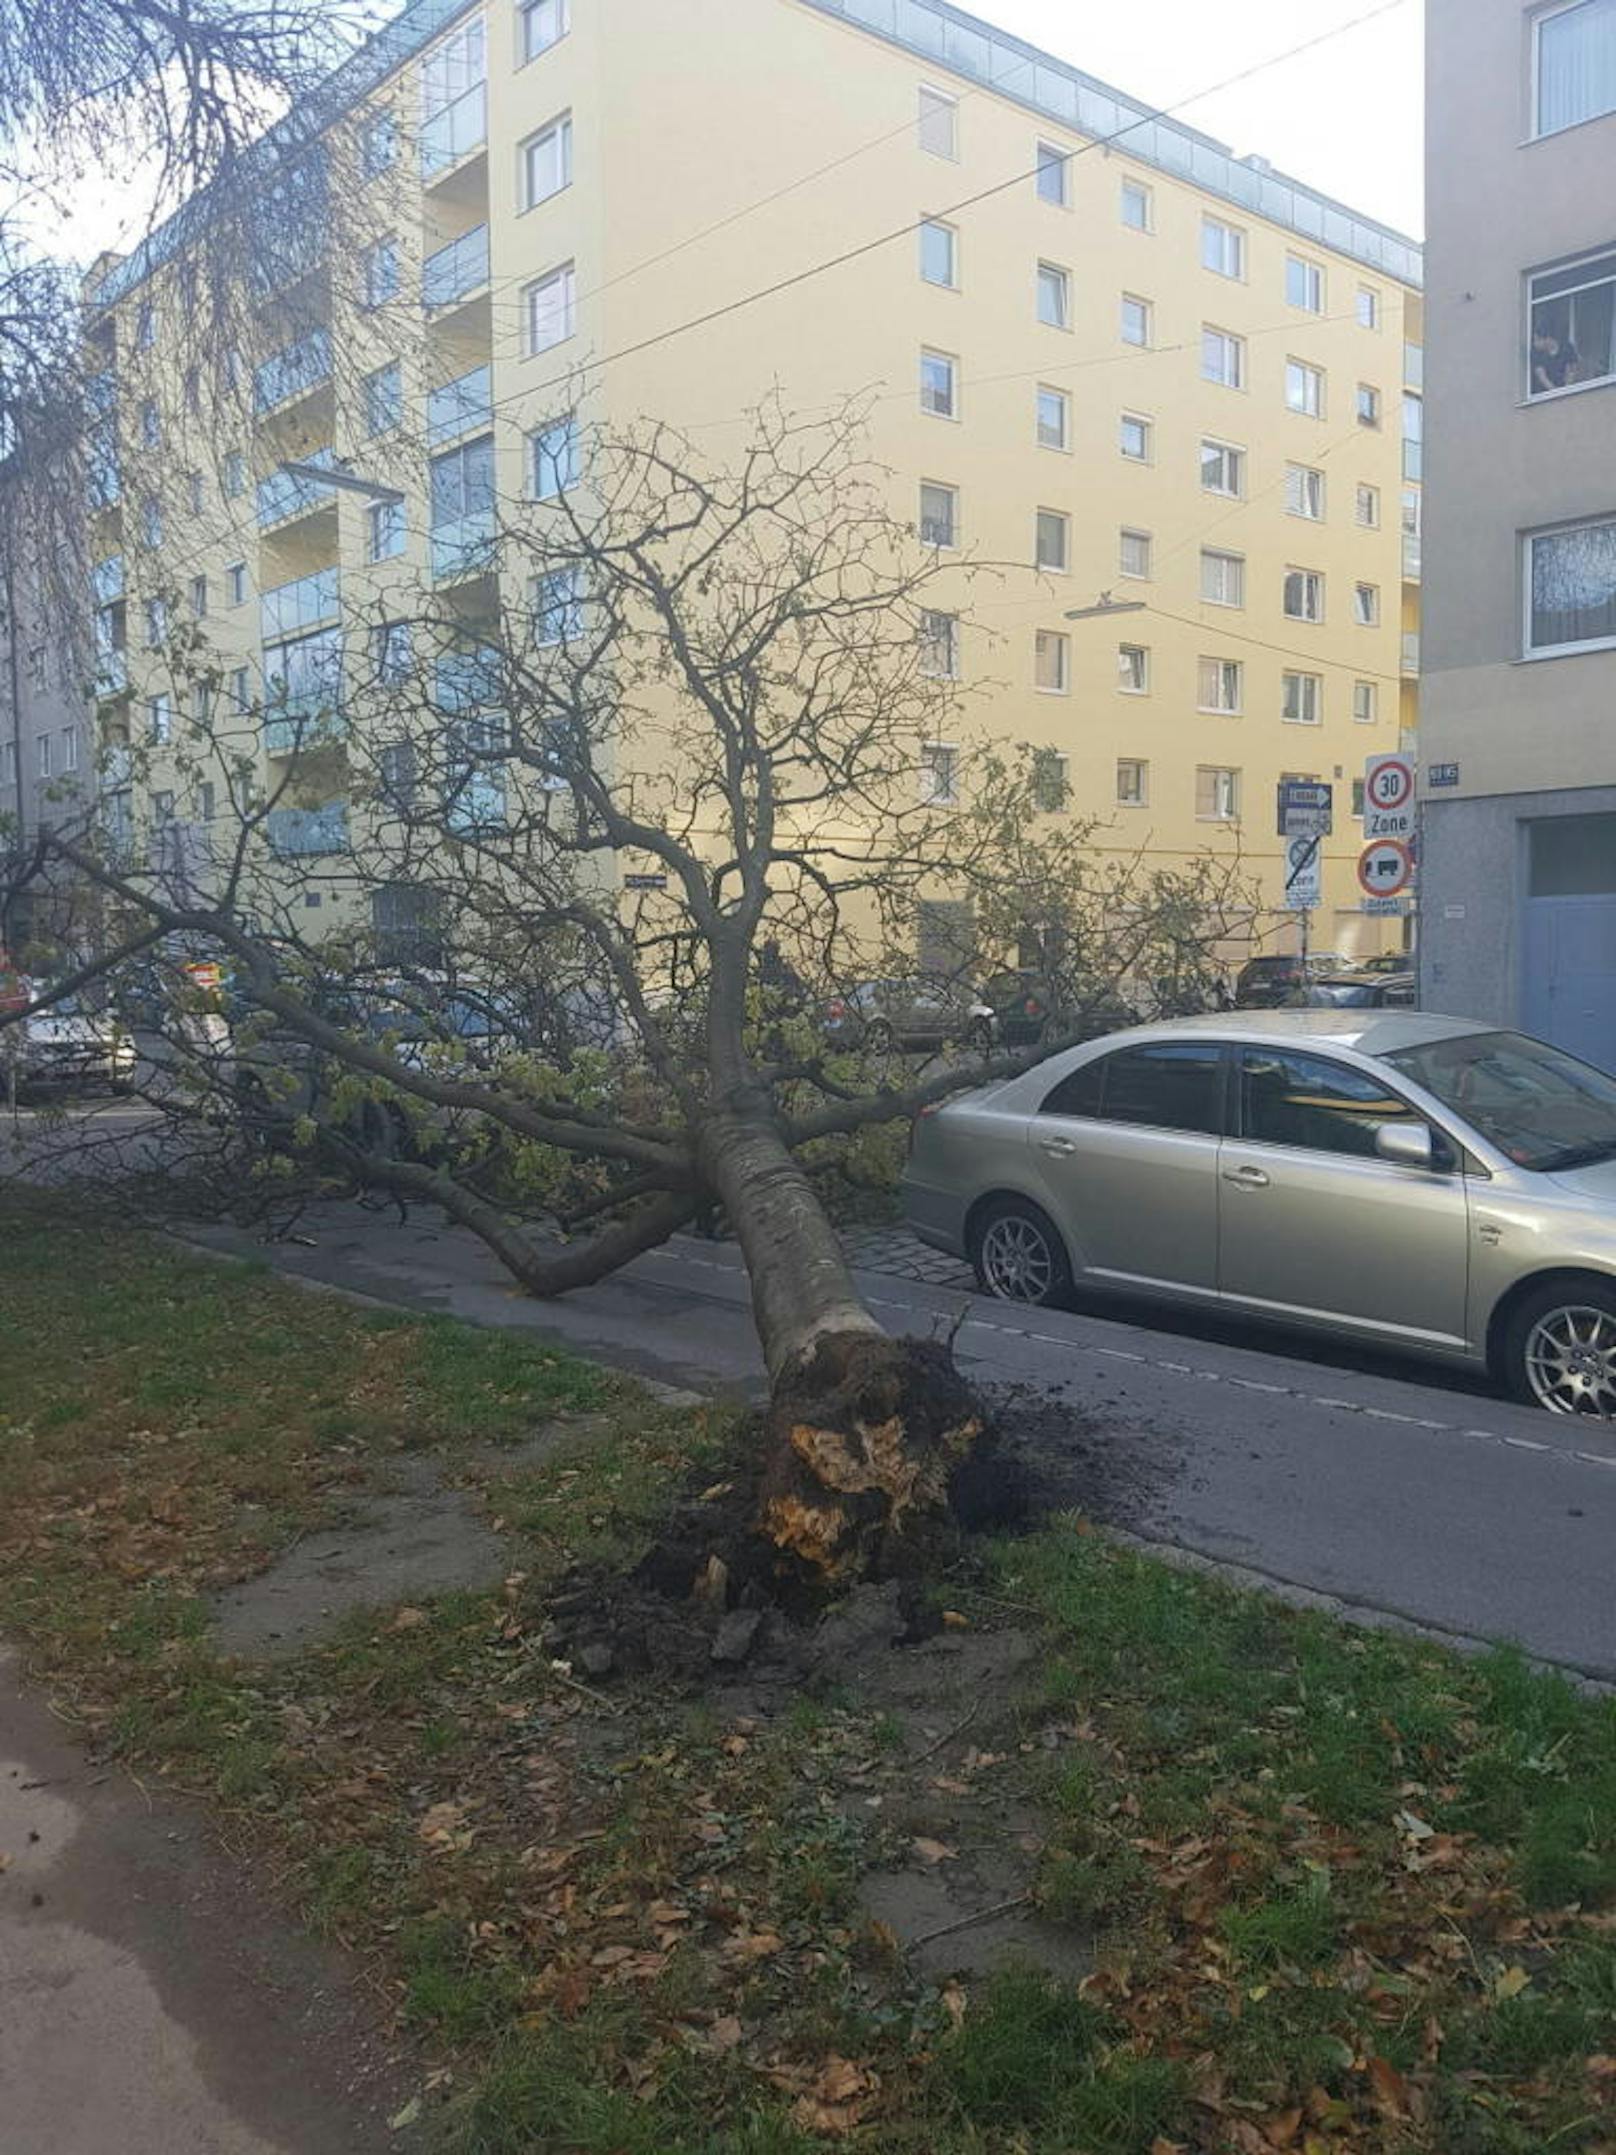 Siegfried hielt diesen komplett entwurzelten Baum auf der Nordwestbahnstraße in Wien-Brigittenau fest